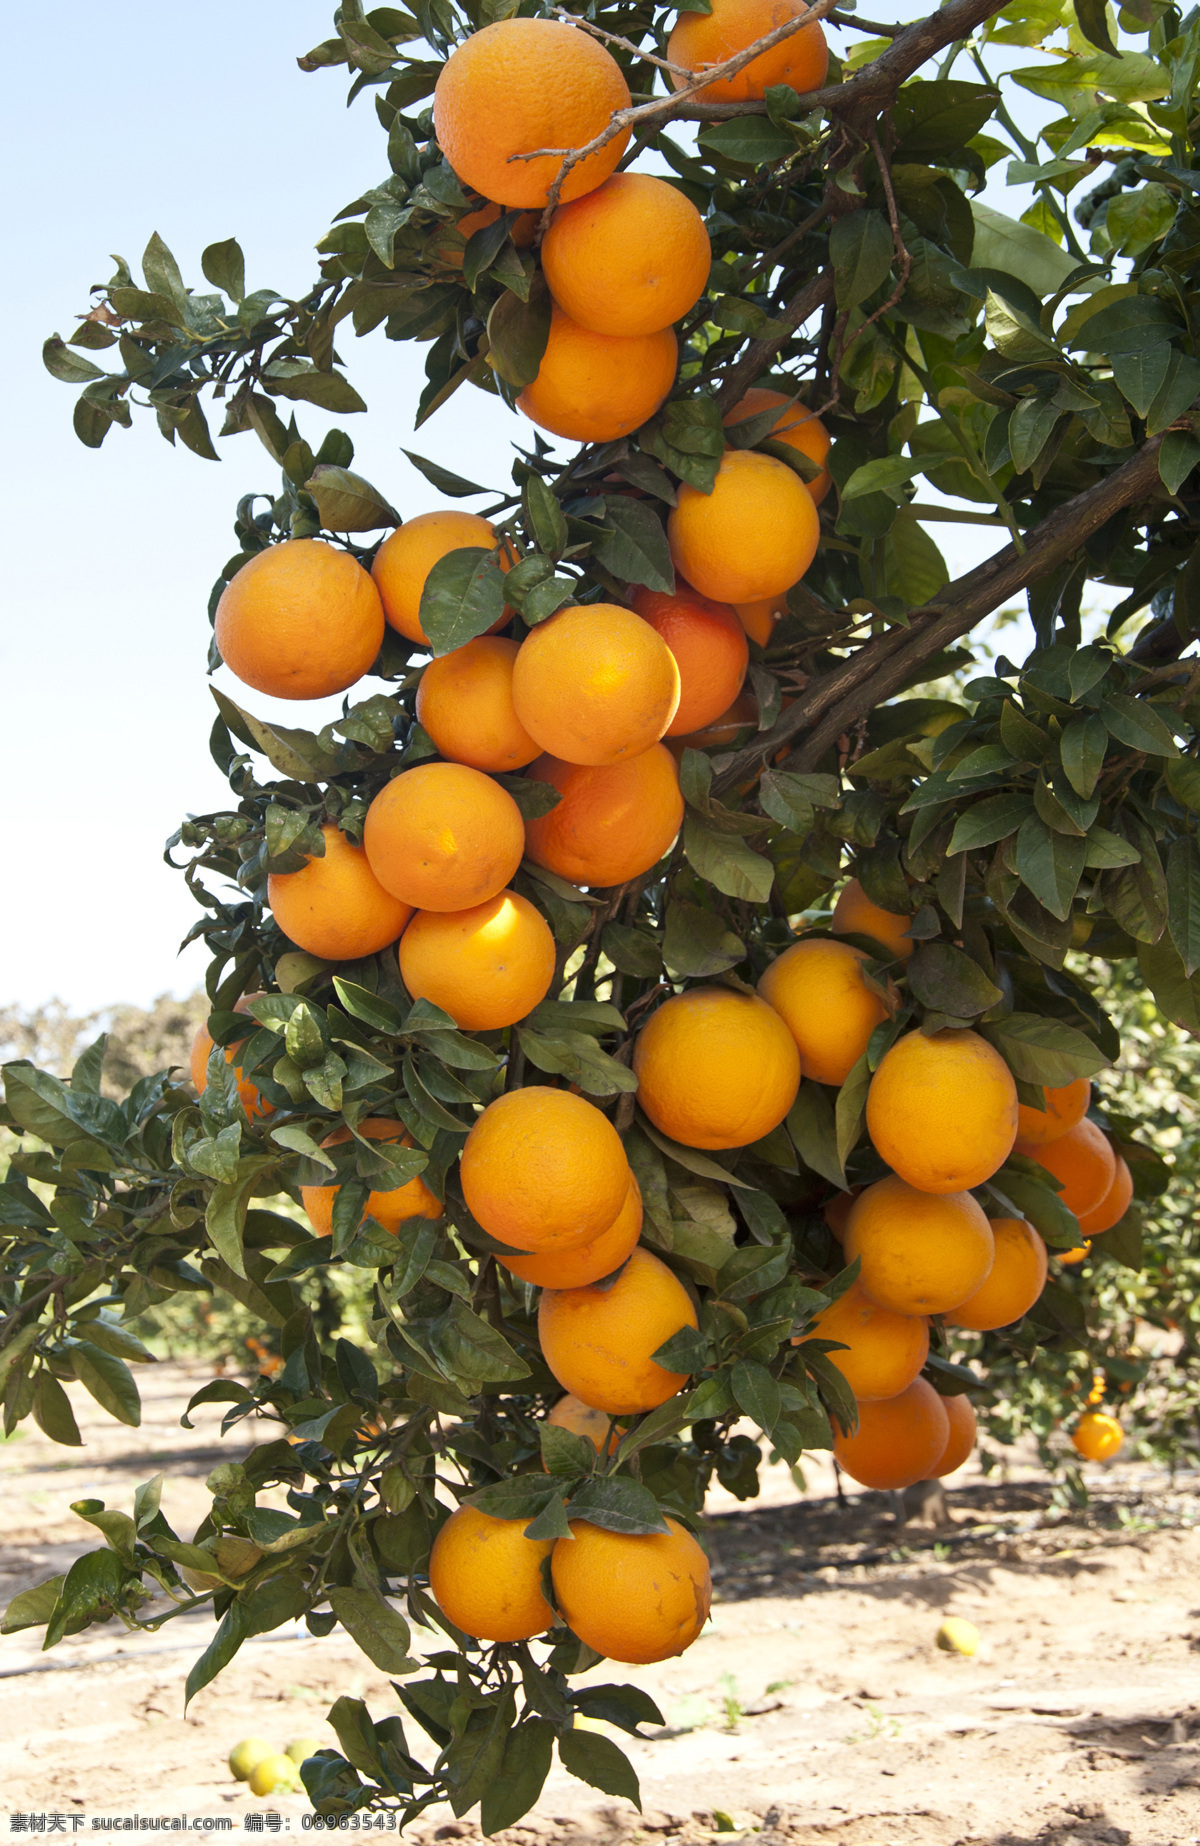 桔子 新鲜橘子 新鲜桔子 桔子采摘 美味 美食 食物 水果 果蔬 新鲜水果 美味水果 水果摄影 蜜桔 香橘 桔子树 橘子树 生物世界